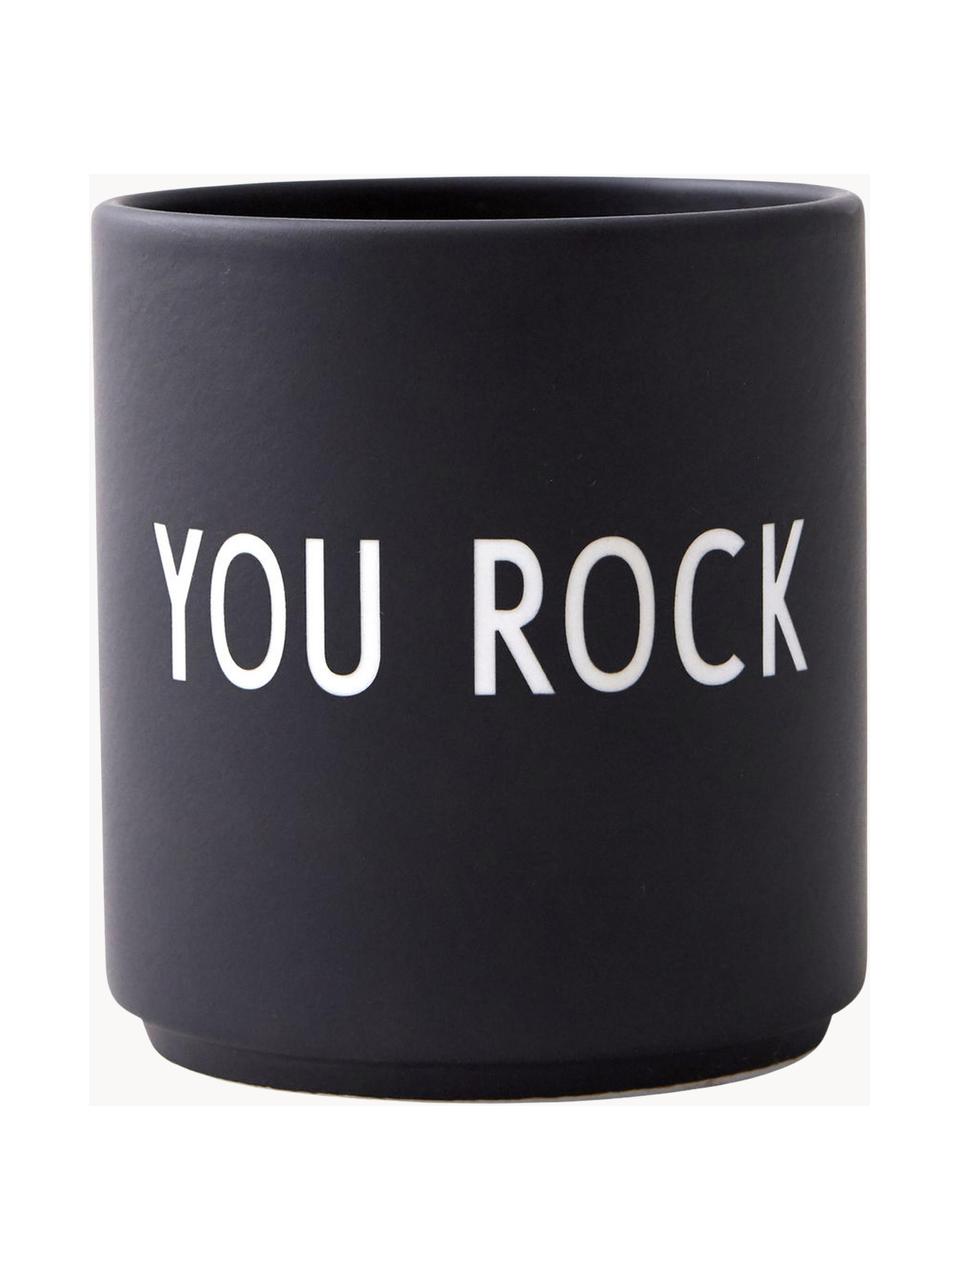 Dizajnový hrnček s nápisom Favourite YOU ROCK, Čínsky porcelán
Mäkký porcelán, ktorý sa vyznačuje predovšetkým žiarivým, priehľadným leskom, Čierna (You rock), Ø 8 x V 9 cm, 250 ml